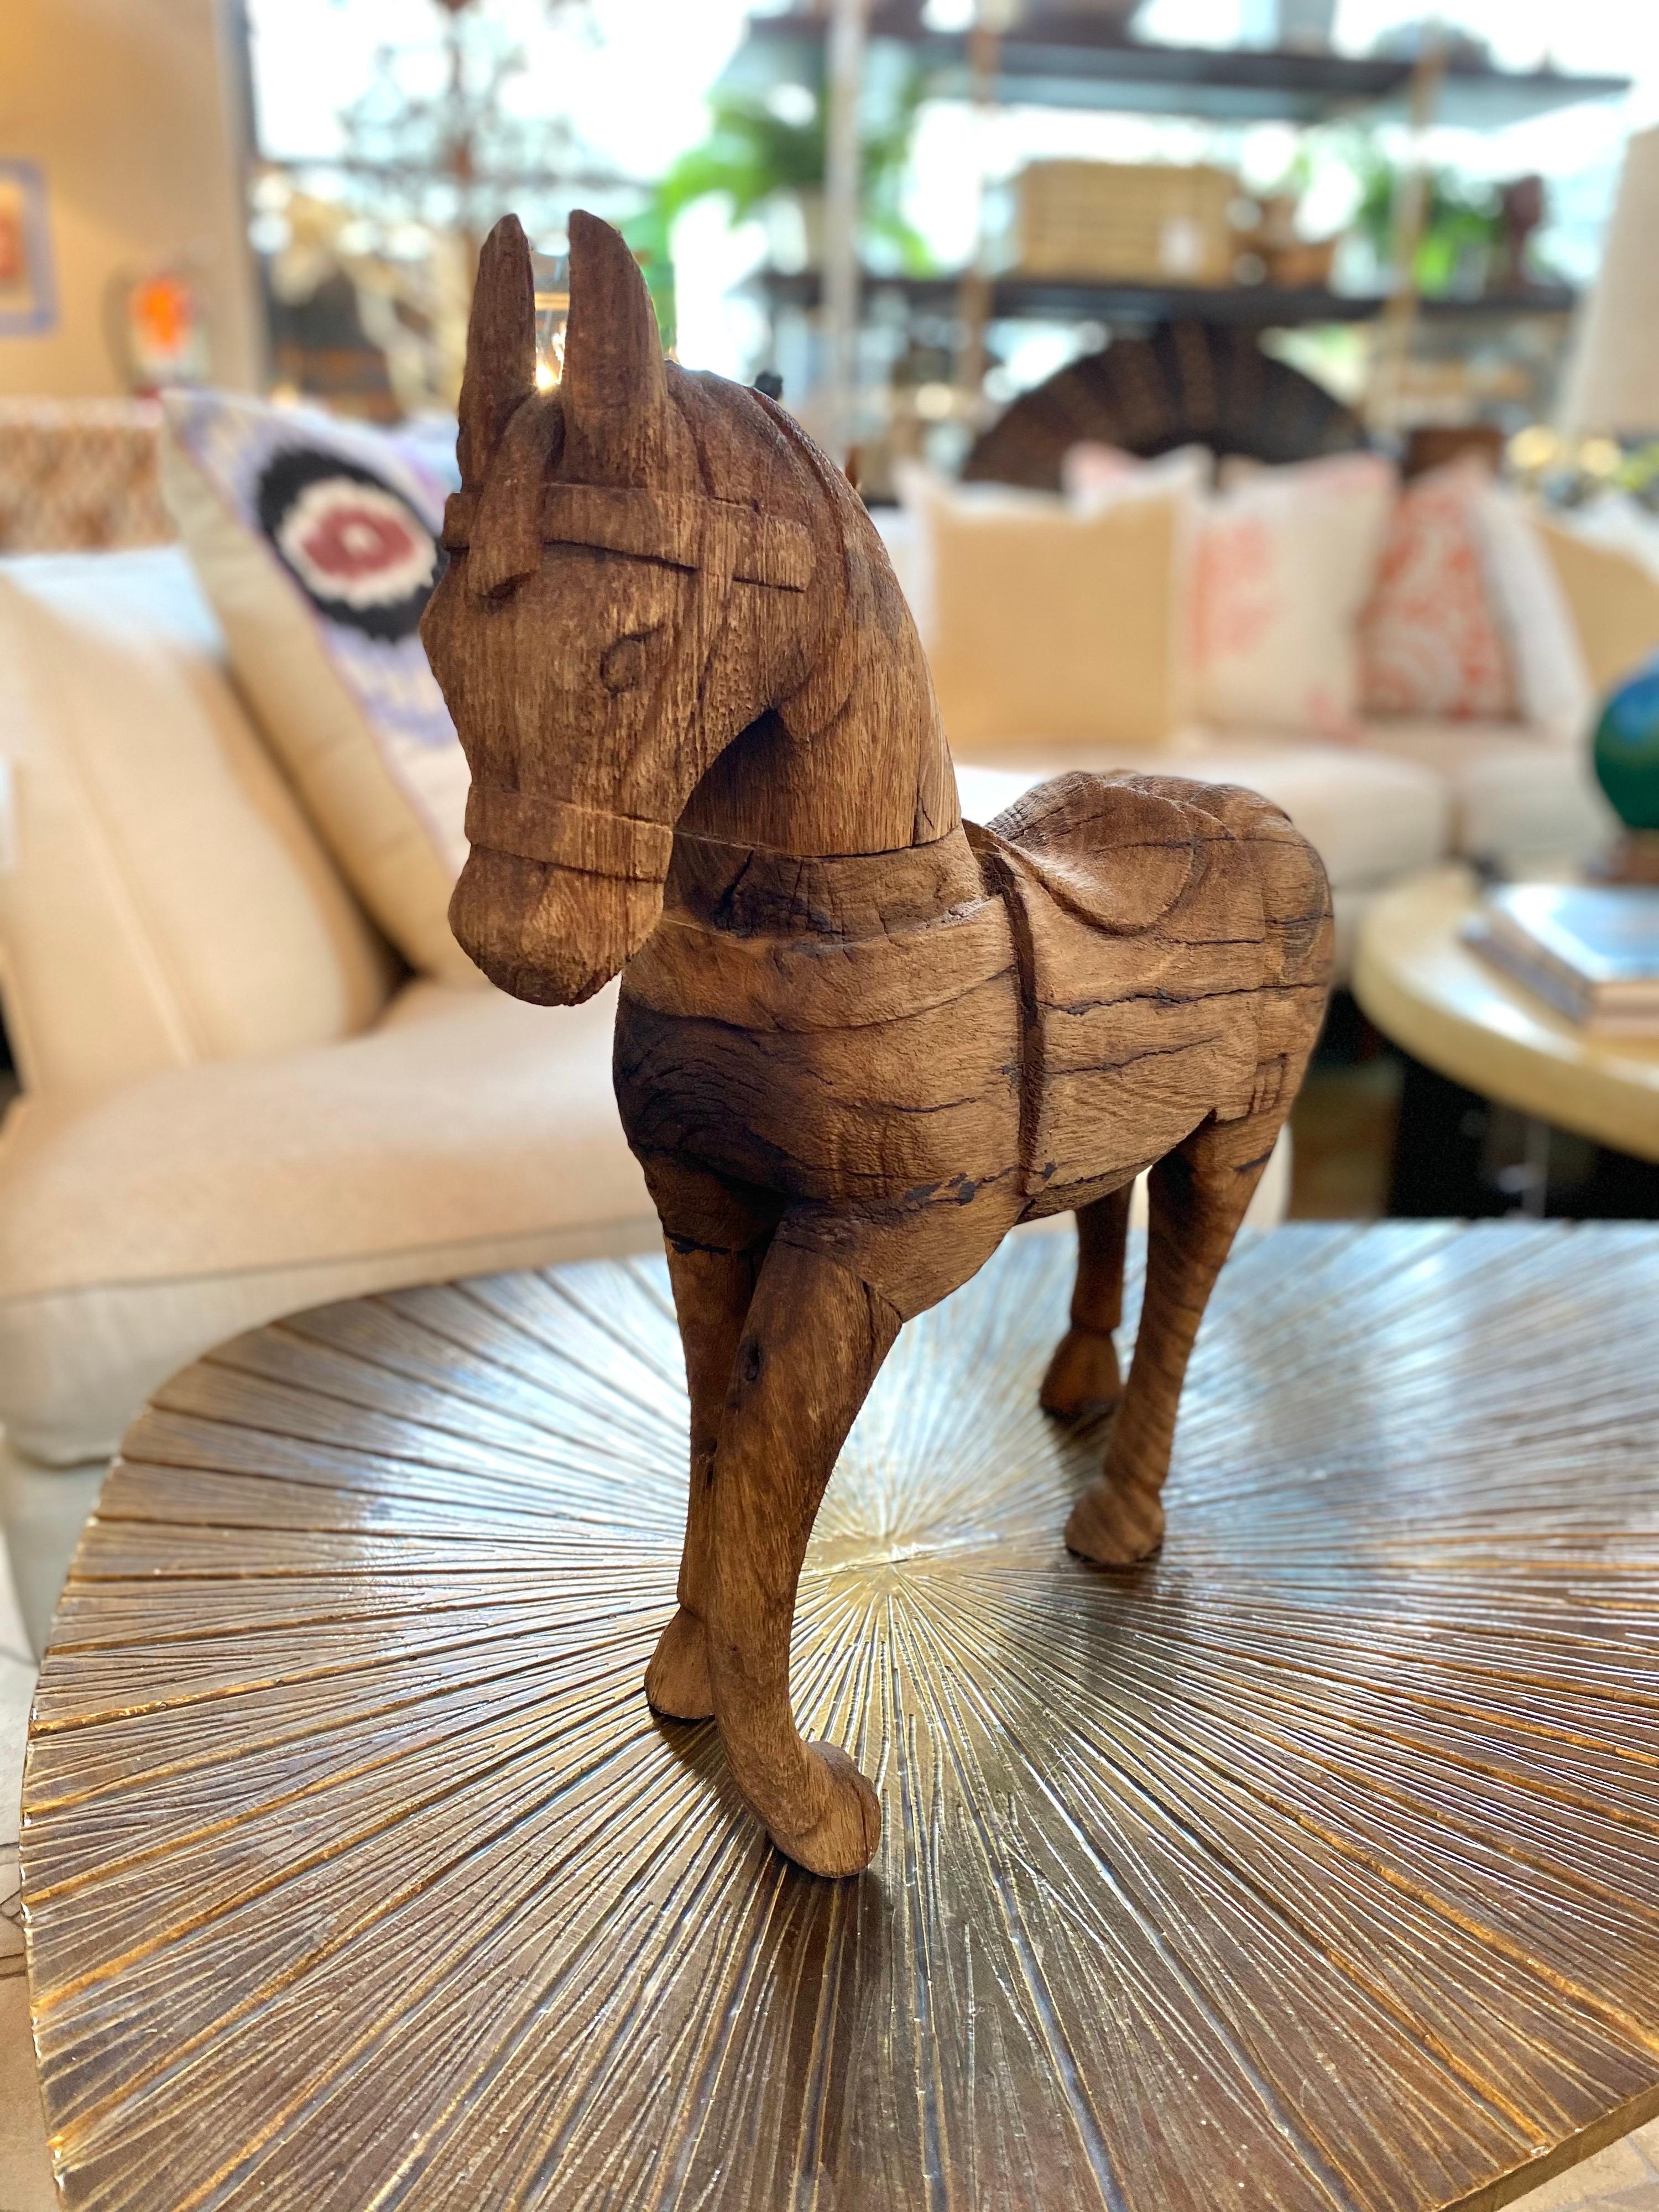 Dark carved wood horse.

Measures: 18